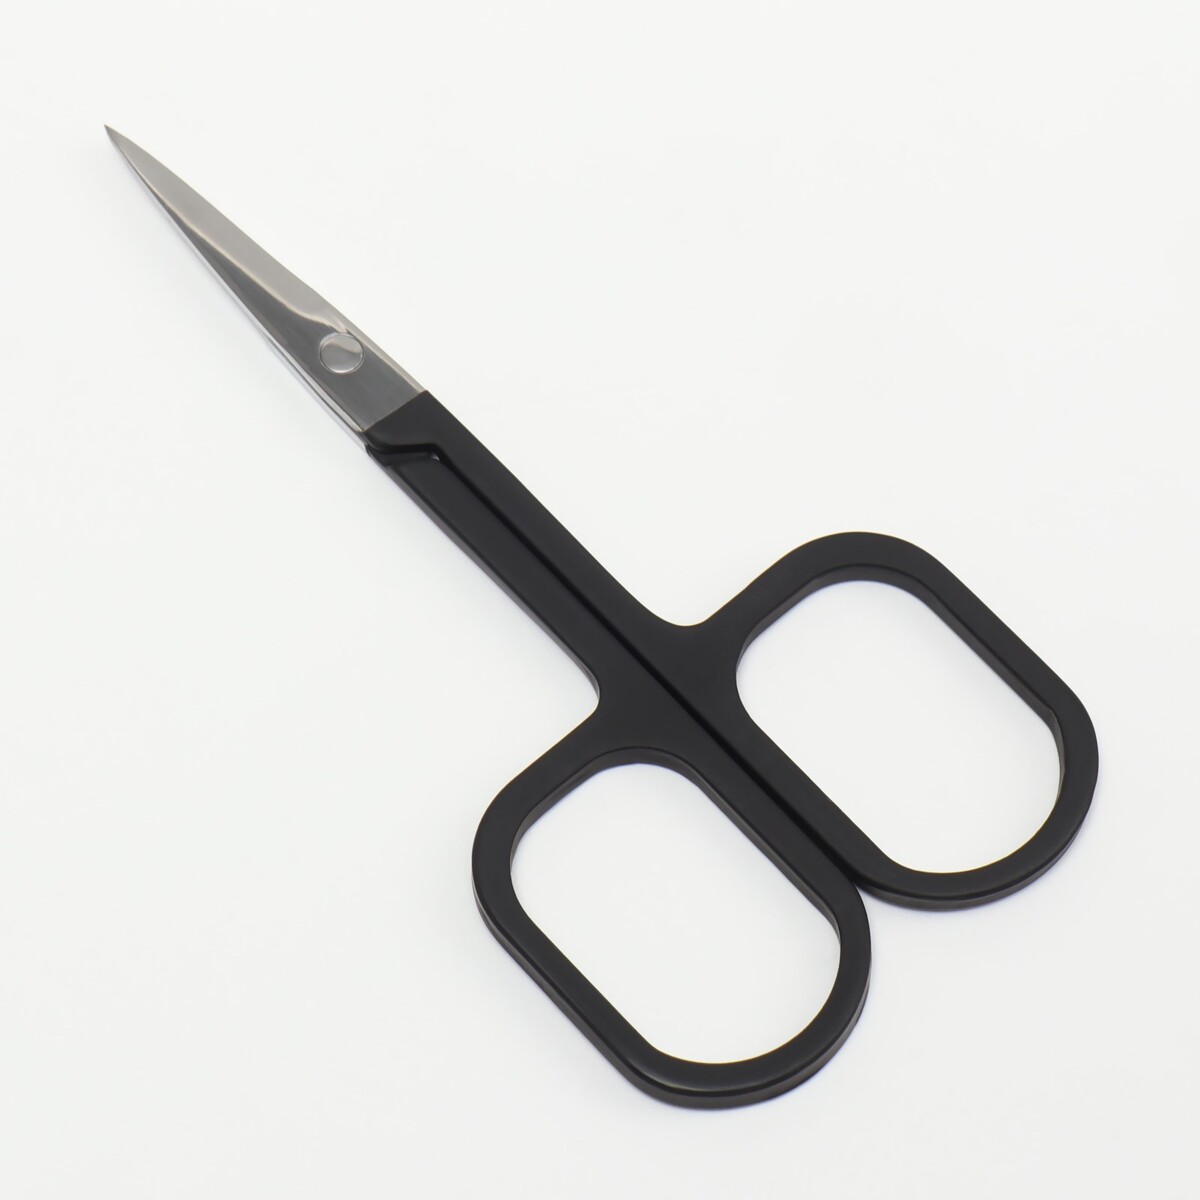 Ножницы маникюрные, узкие, прямые, с прорезиненными ручками, 9 см, цвет серебристый/черный щипцы пробойник с прорезиненными ручками 25 × 9 см